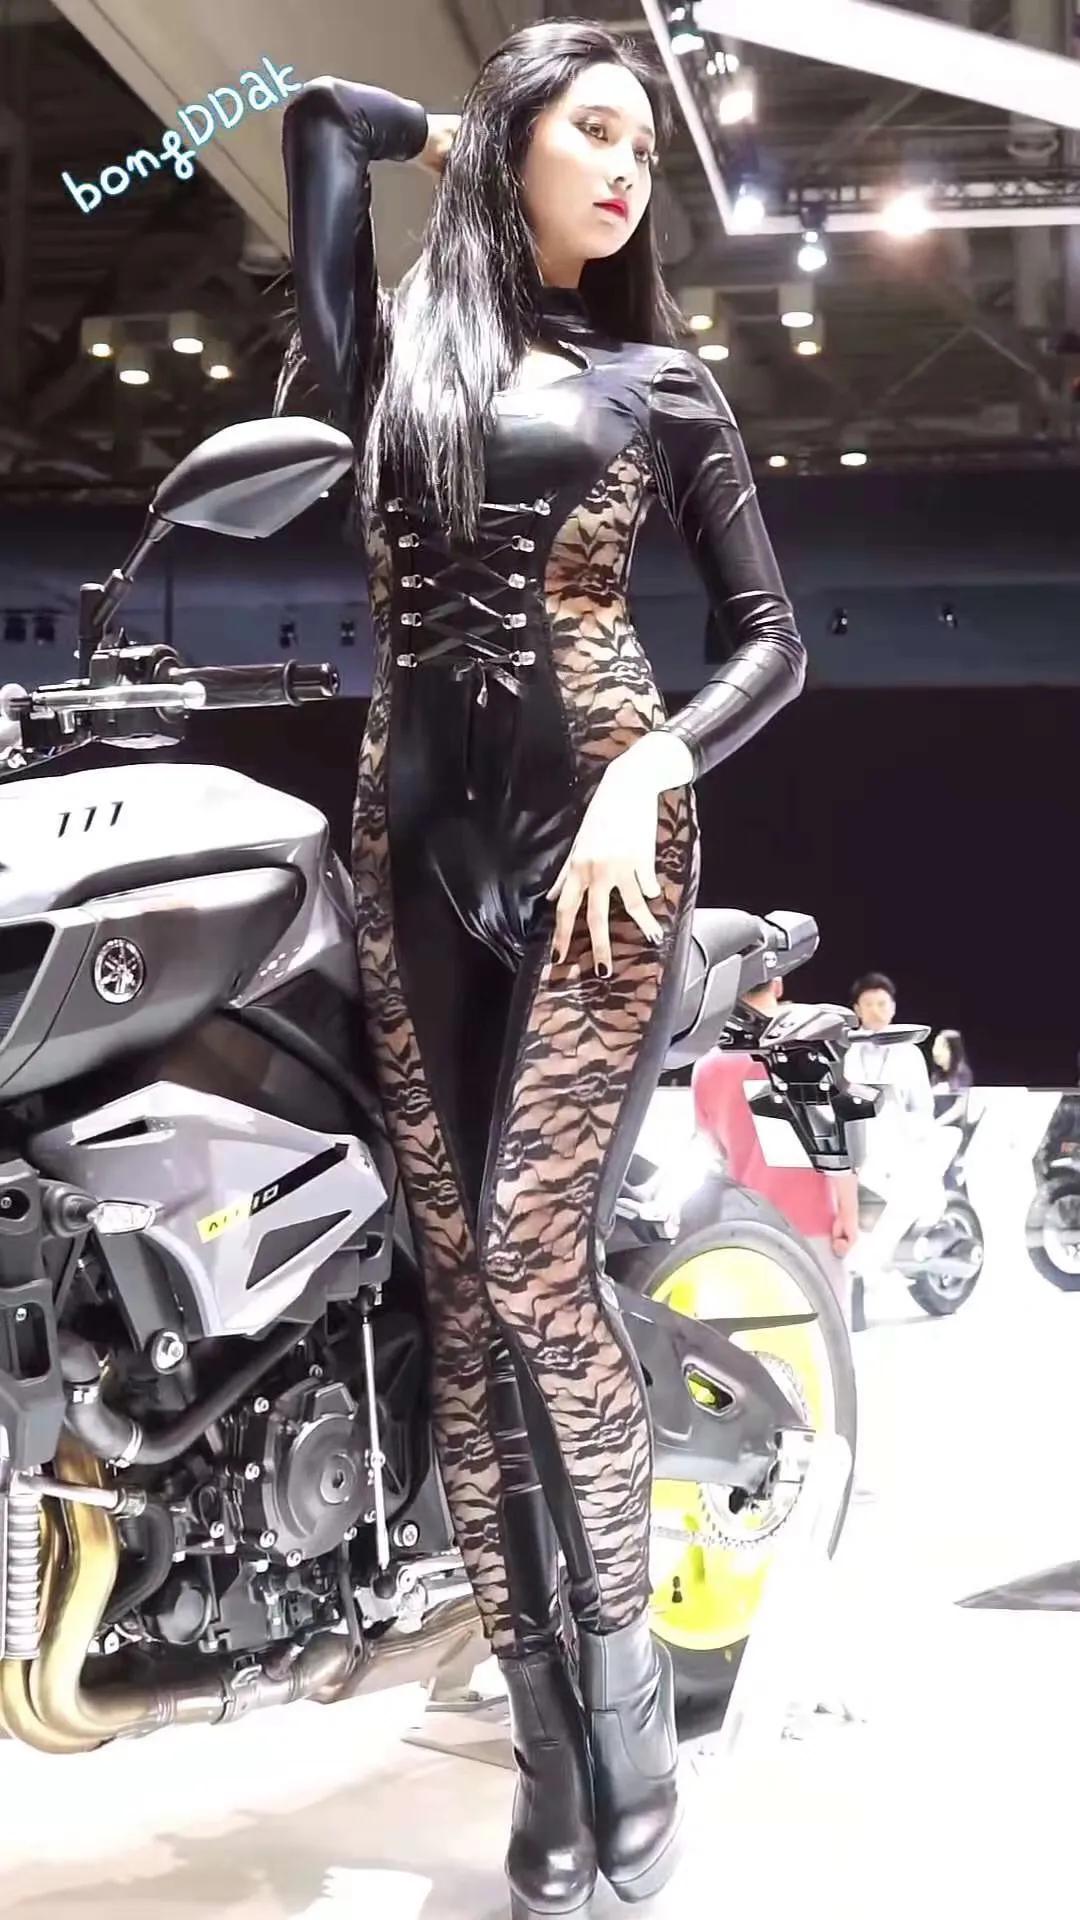 韩国摩托车展上的车模,国内很少见到